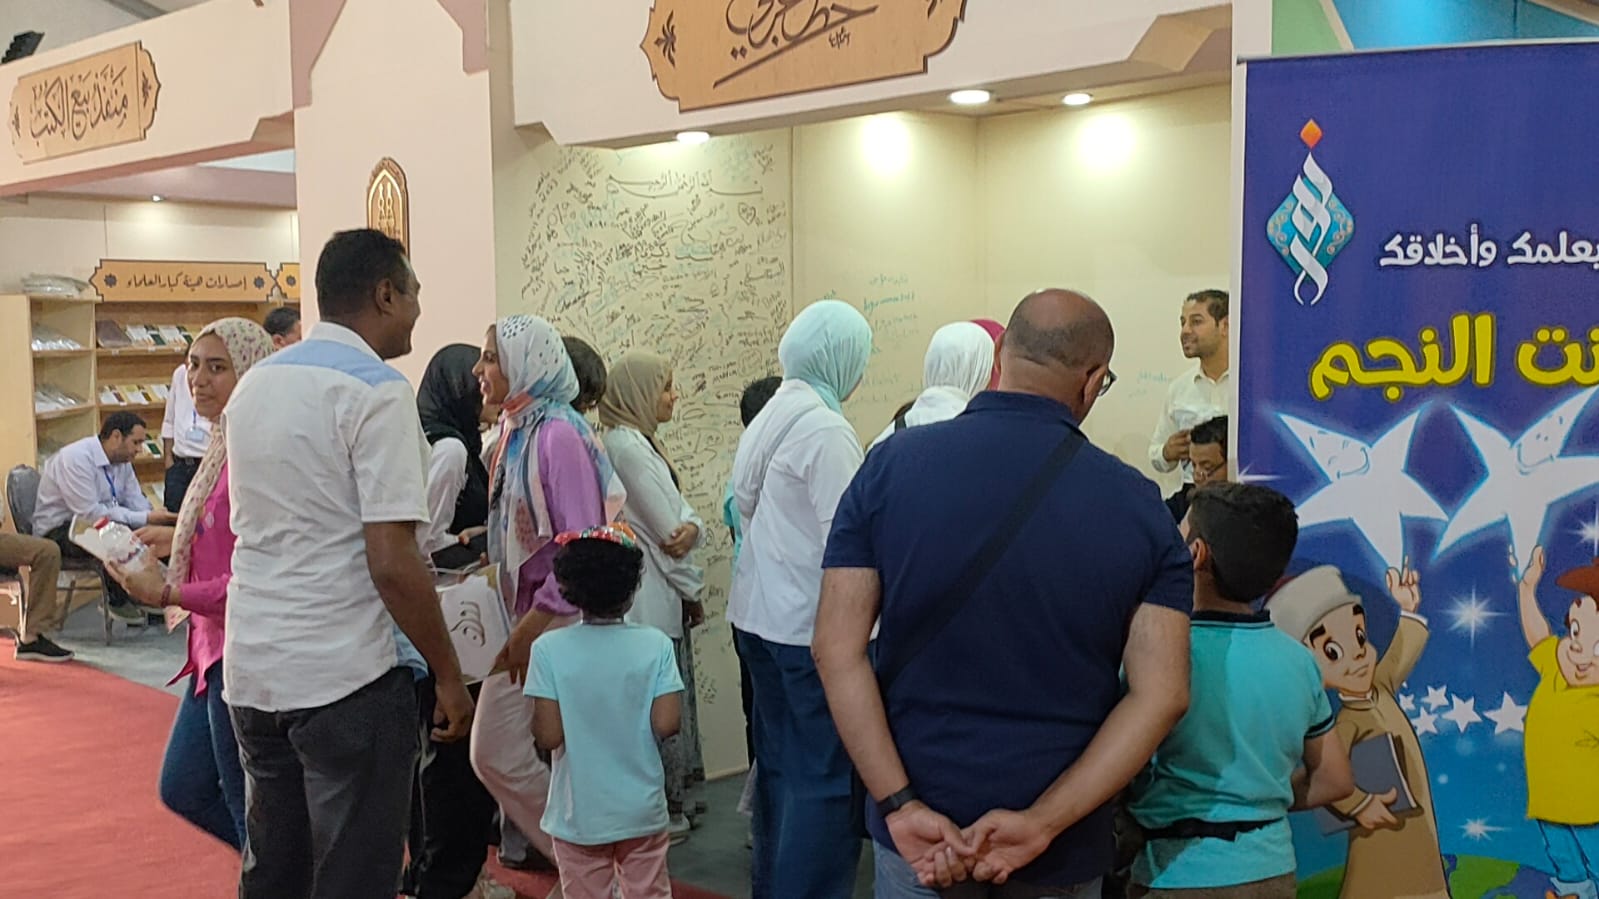 توافد الأسر علي جناح الأزهر الشريف بمعرض الكتاب بمكتبة الإسكندرية